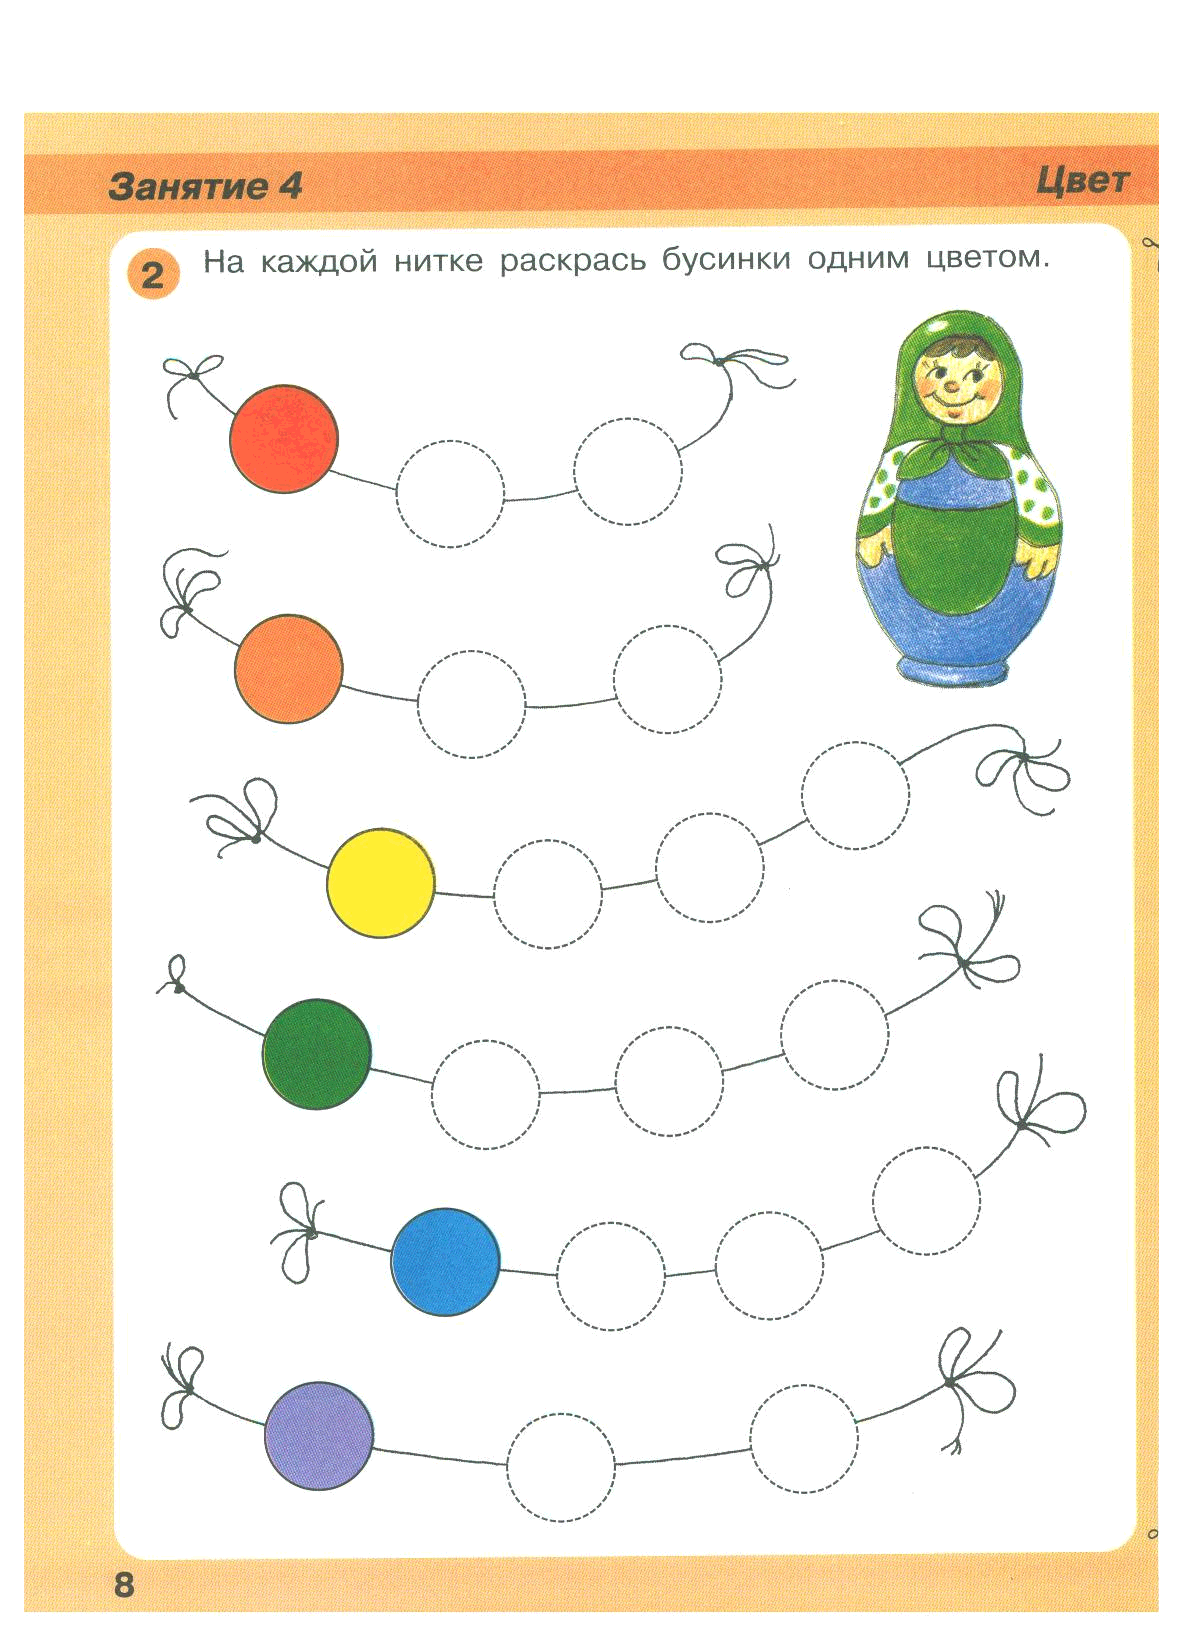 Занятия для ☀ детей 3 4 лет: ⛅️ правила, формы, методы - развитие ребёнка,✔️творчество, развивающие программы и окружающий мир